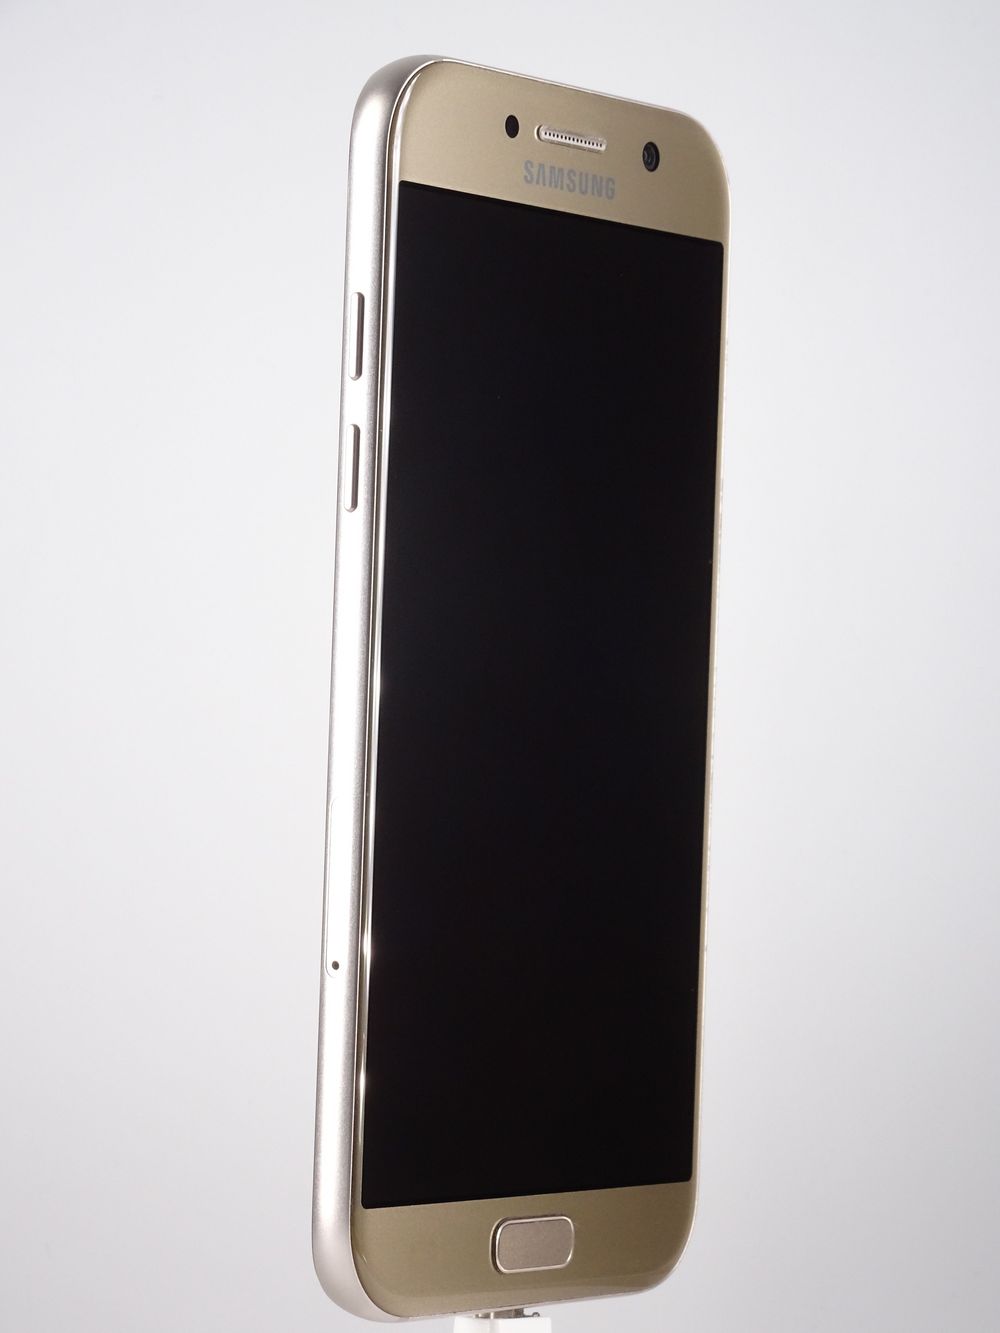 Мобилен телефон Samsung, Galaxy A5 (2017), 64 GB, Gold,  Като нов